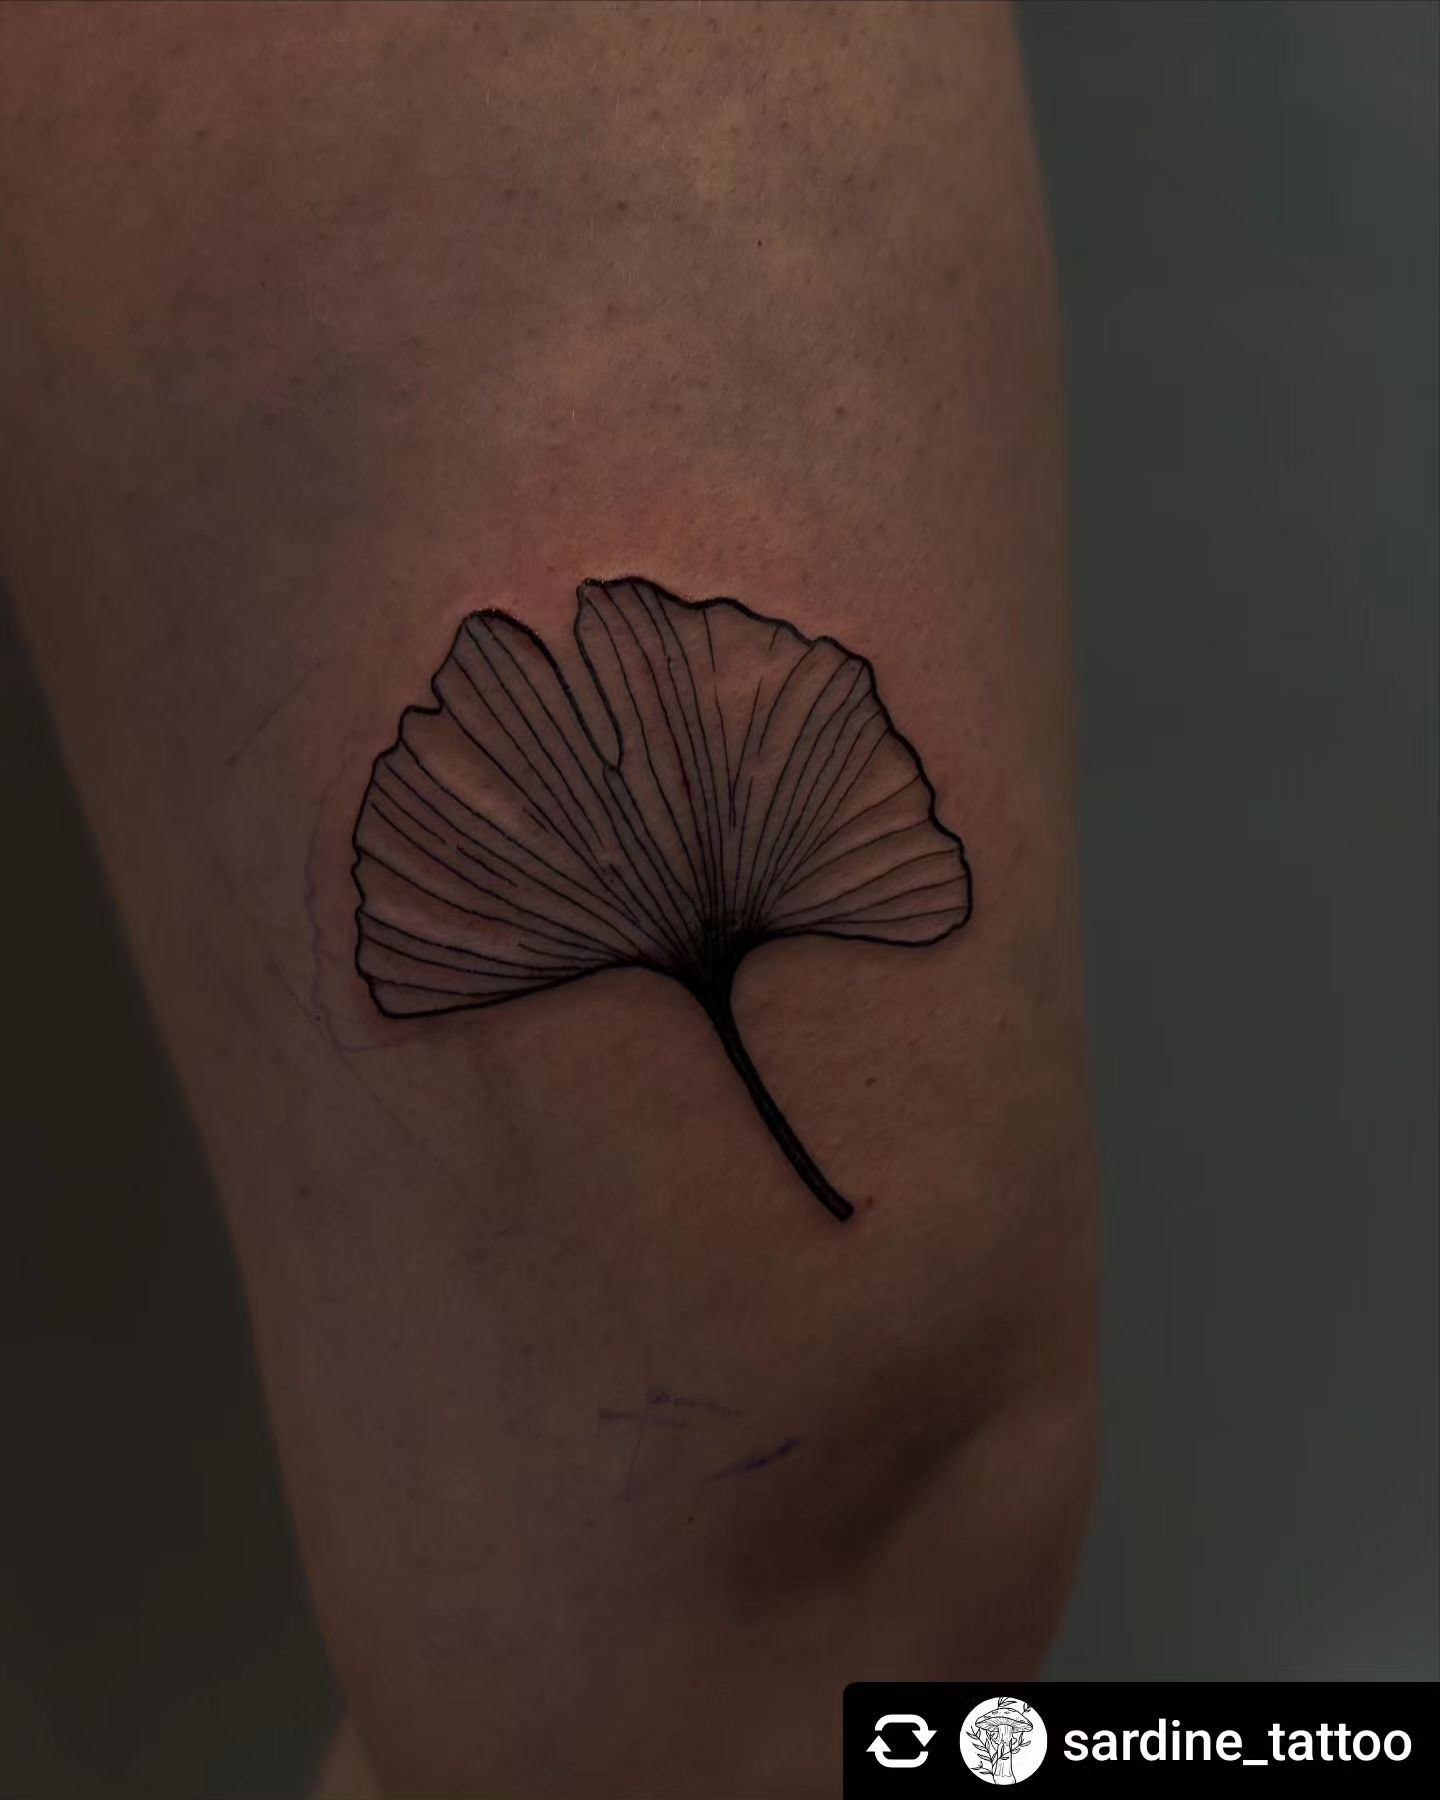 Ginko von @sardine_tattoo __
@thank you so much inaaaxyz 

 #tattoo #tattooideas